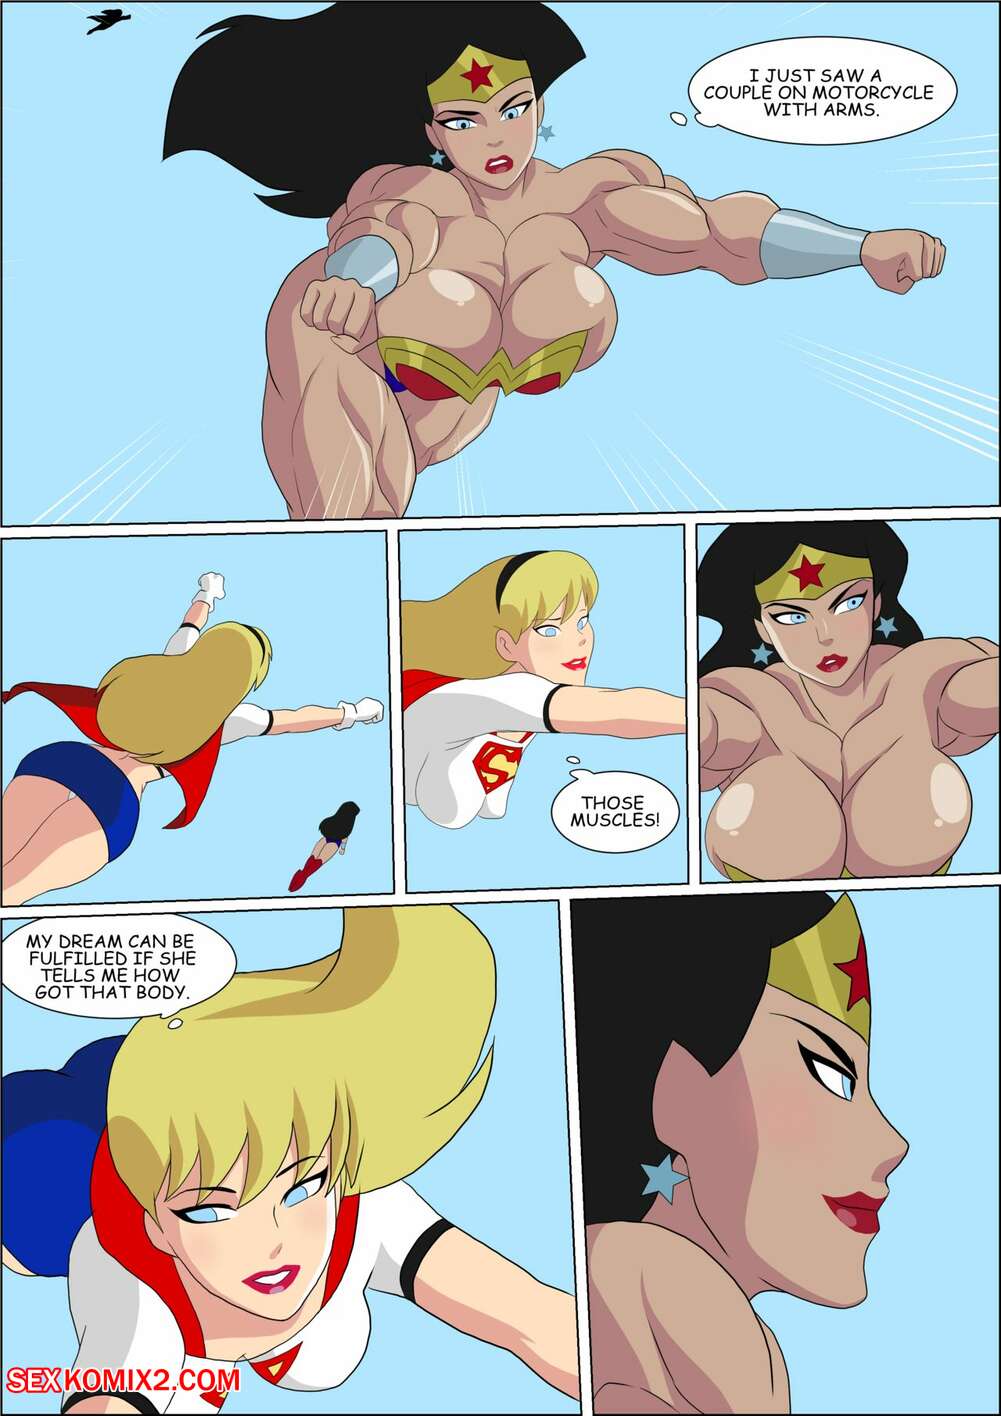 1001px x 1416px - âœ…ï¸ Porn comic Wonder Woman. Zetarok Sex comic busty superhero babes | Porn  comics in English for adults only | sexkomix2.com